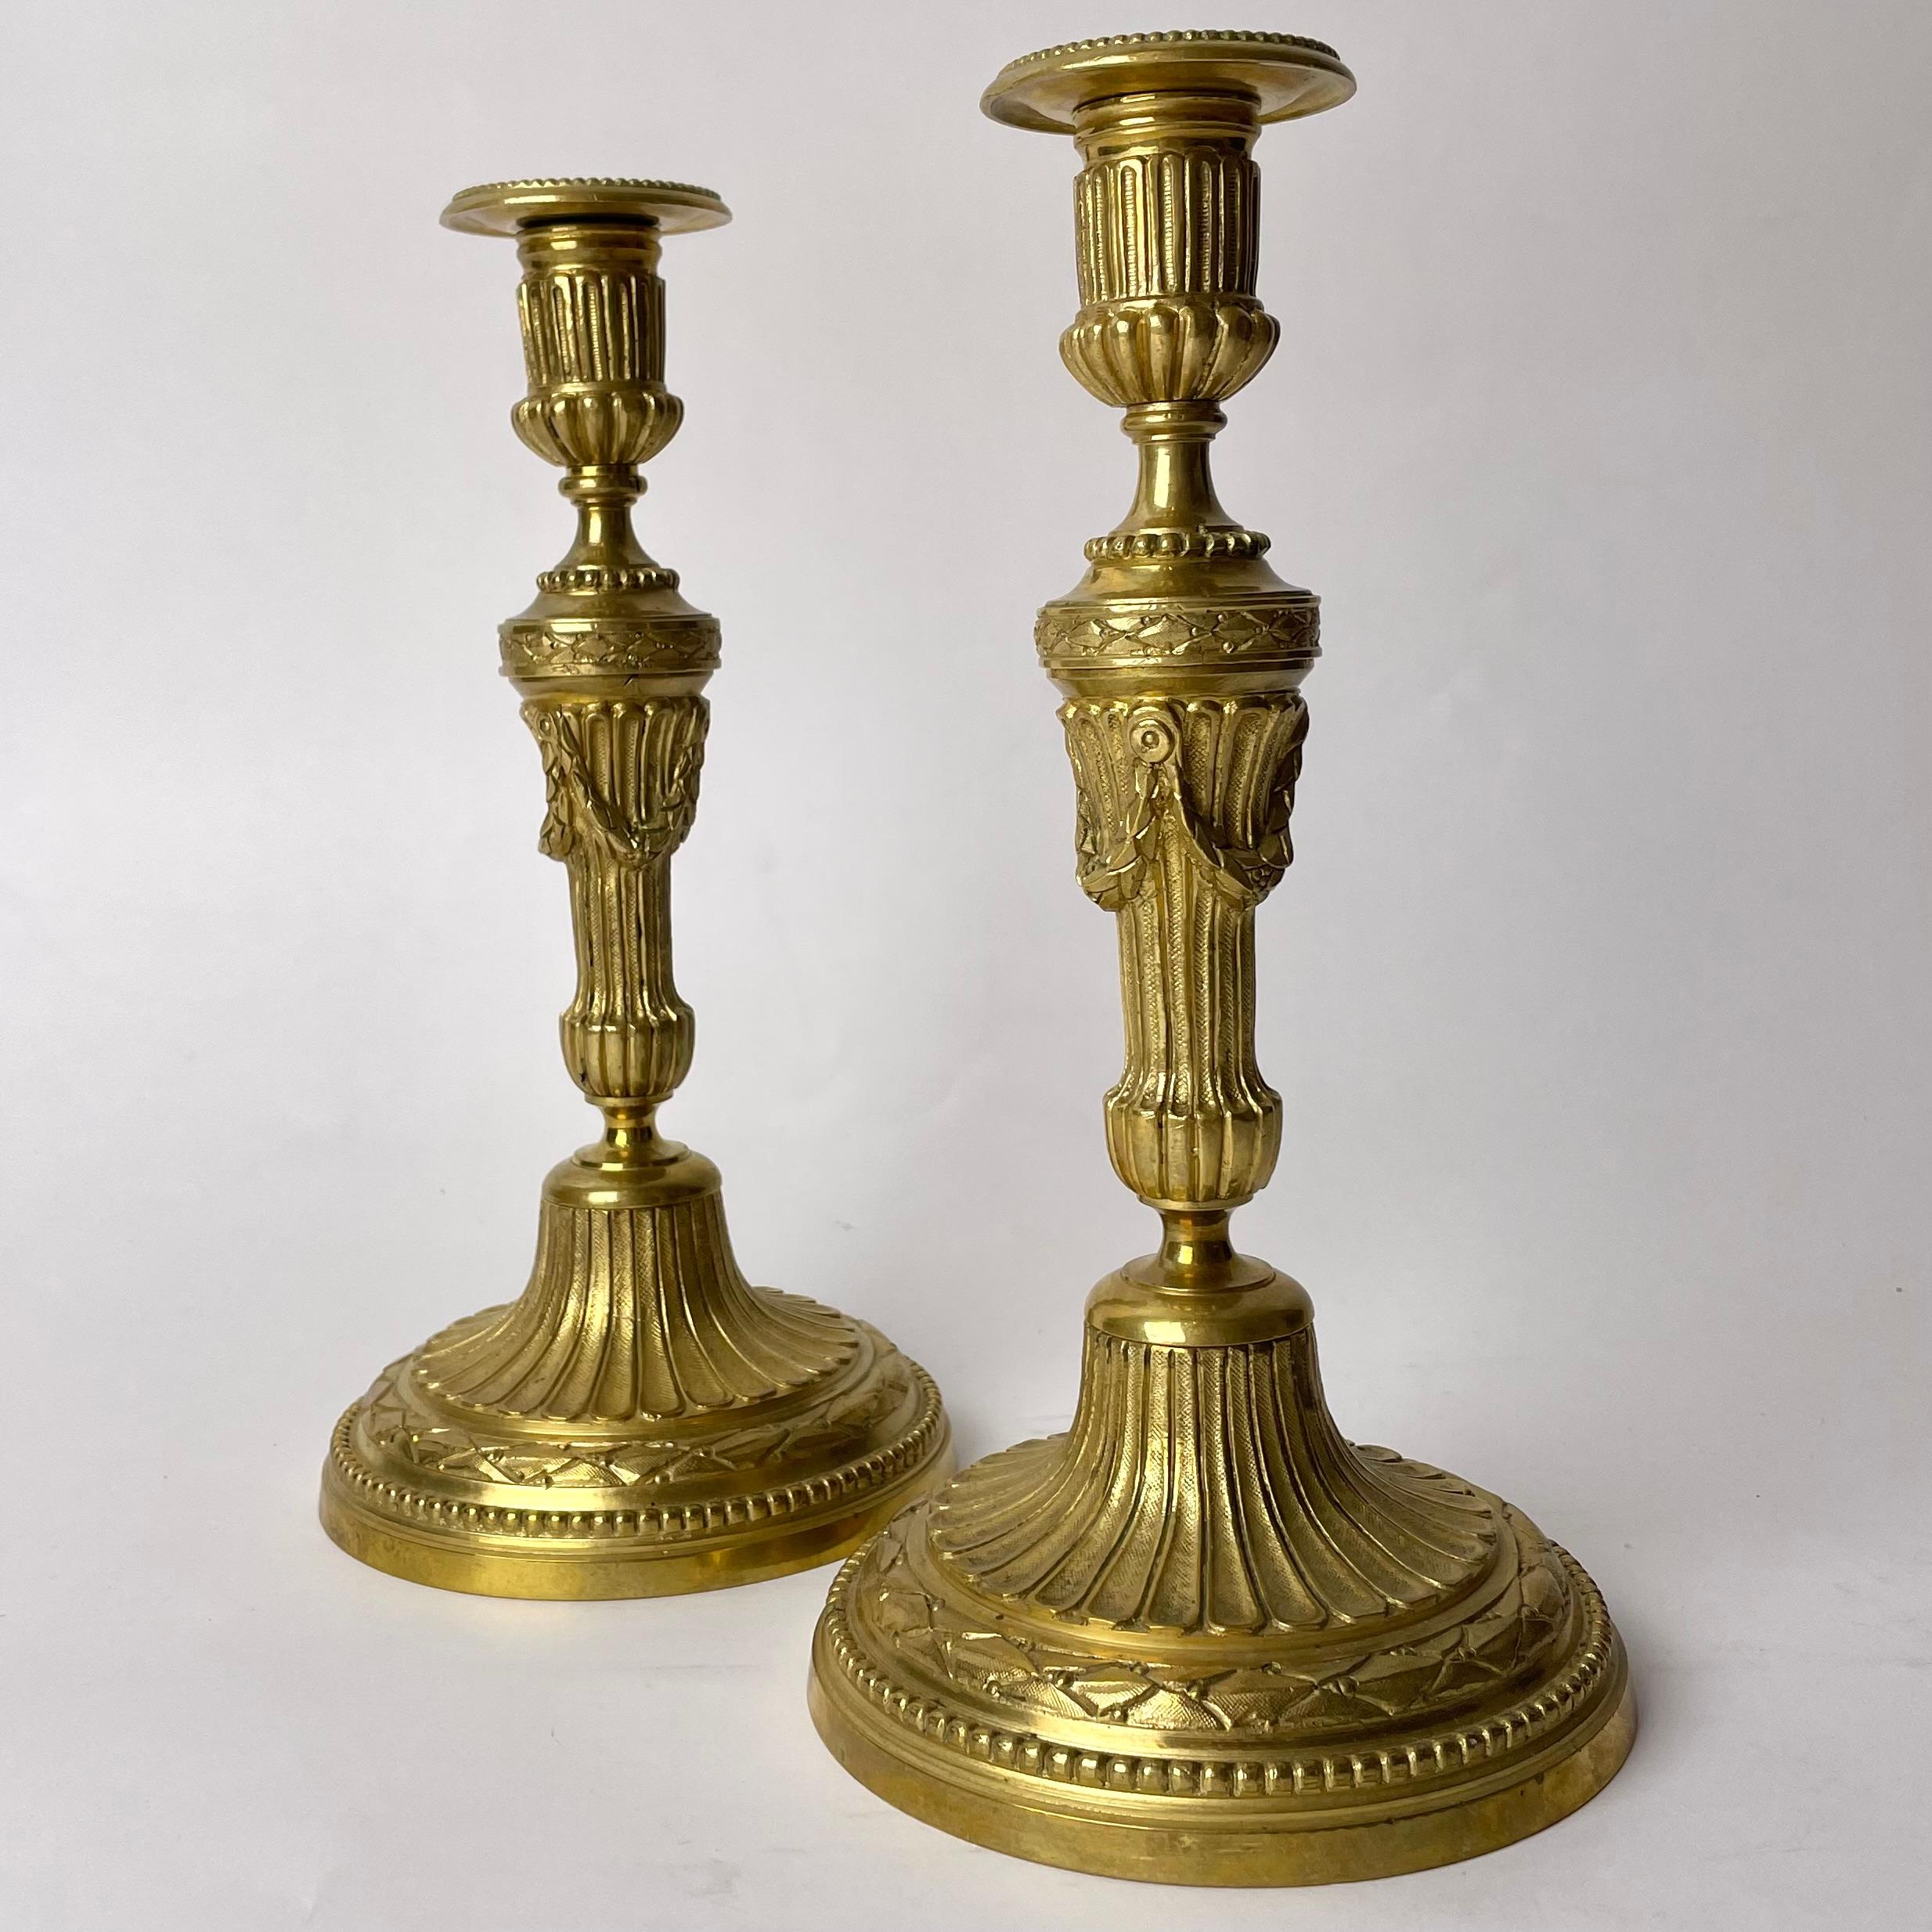 Paire de chandeliers élégants et ornés en bronze doré du XIXe siècle. Dans le style de Louis XVI.

Cette paire de chandeliers en bronze doré est très ornée dans le style Louis XVI, reflétant une appréciation des formes élégantes d'origine classique.